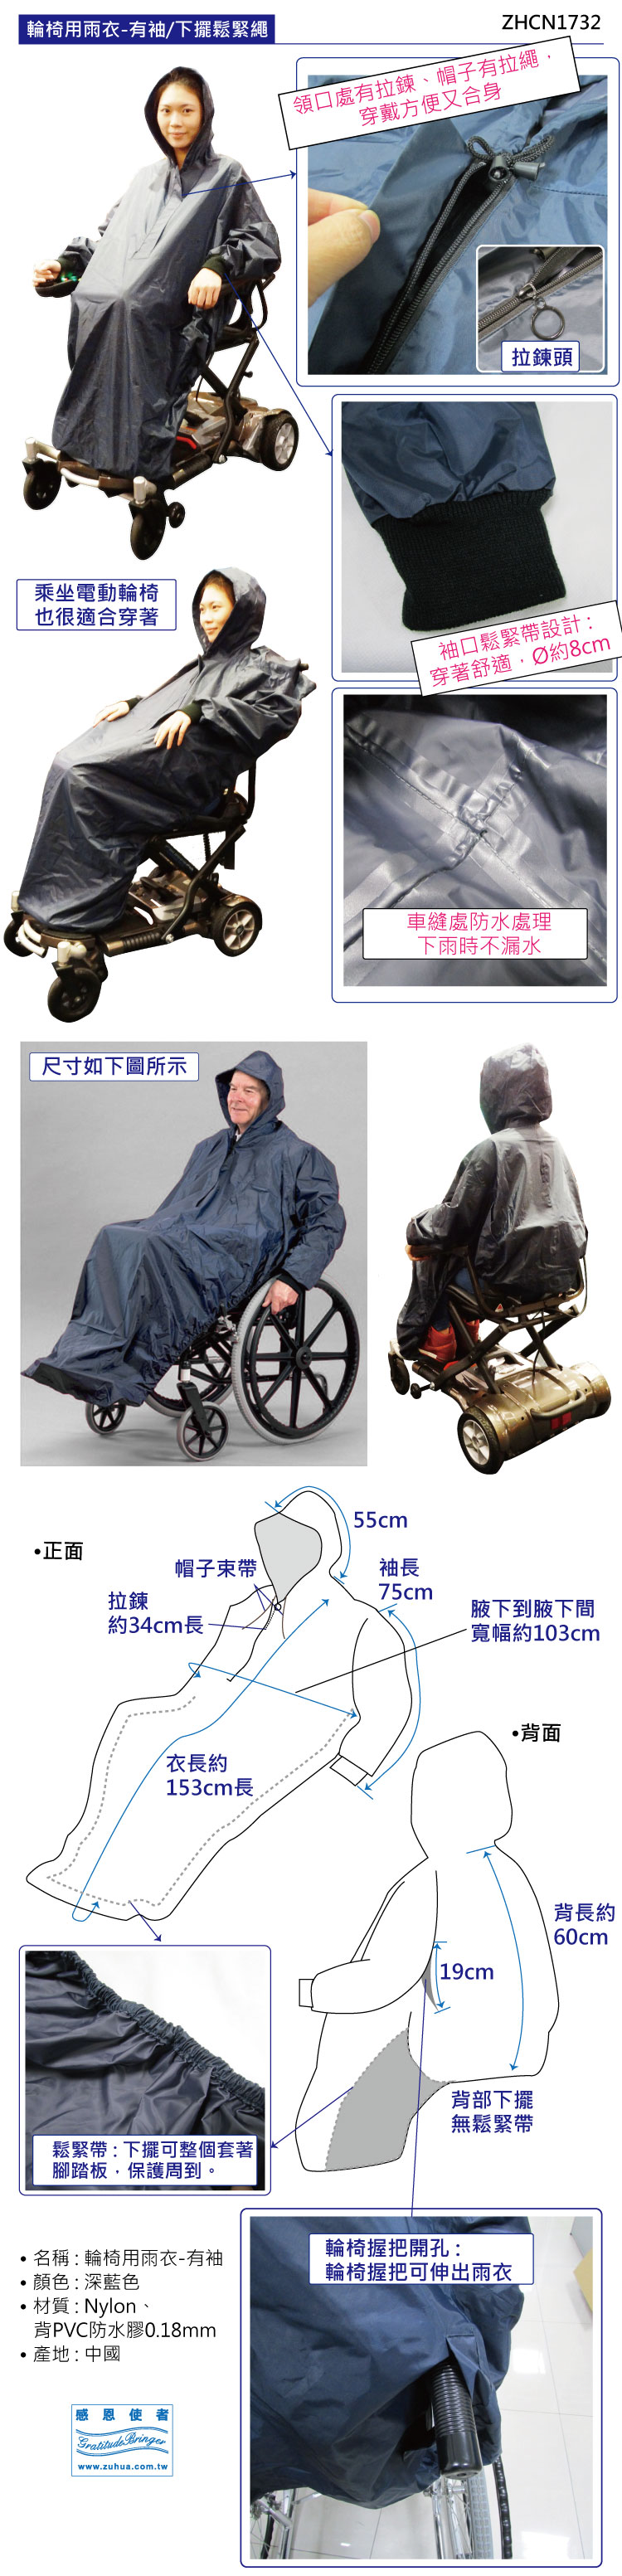 輪椅用雨衣，乘坐輪椅者可方便自由外出，遇下雨也不怕，附袖設計讓使用者可方便自行推行輪椅。輪椅雨衣